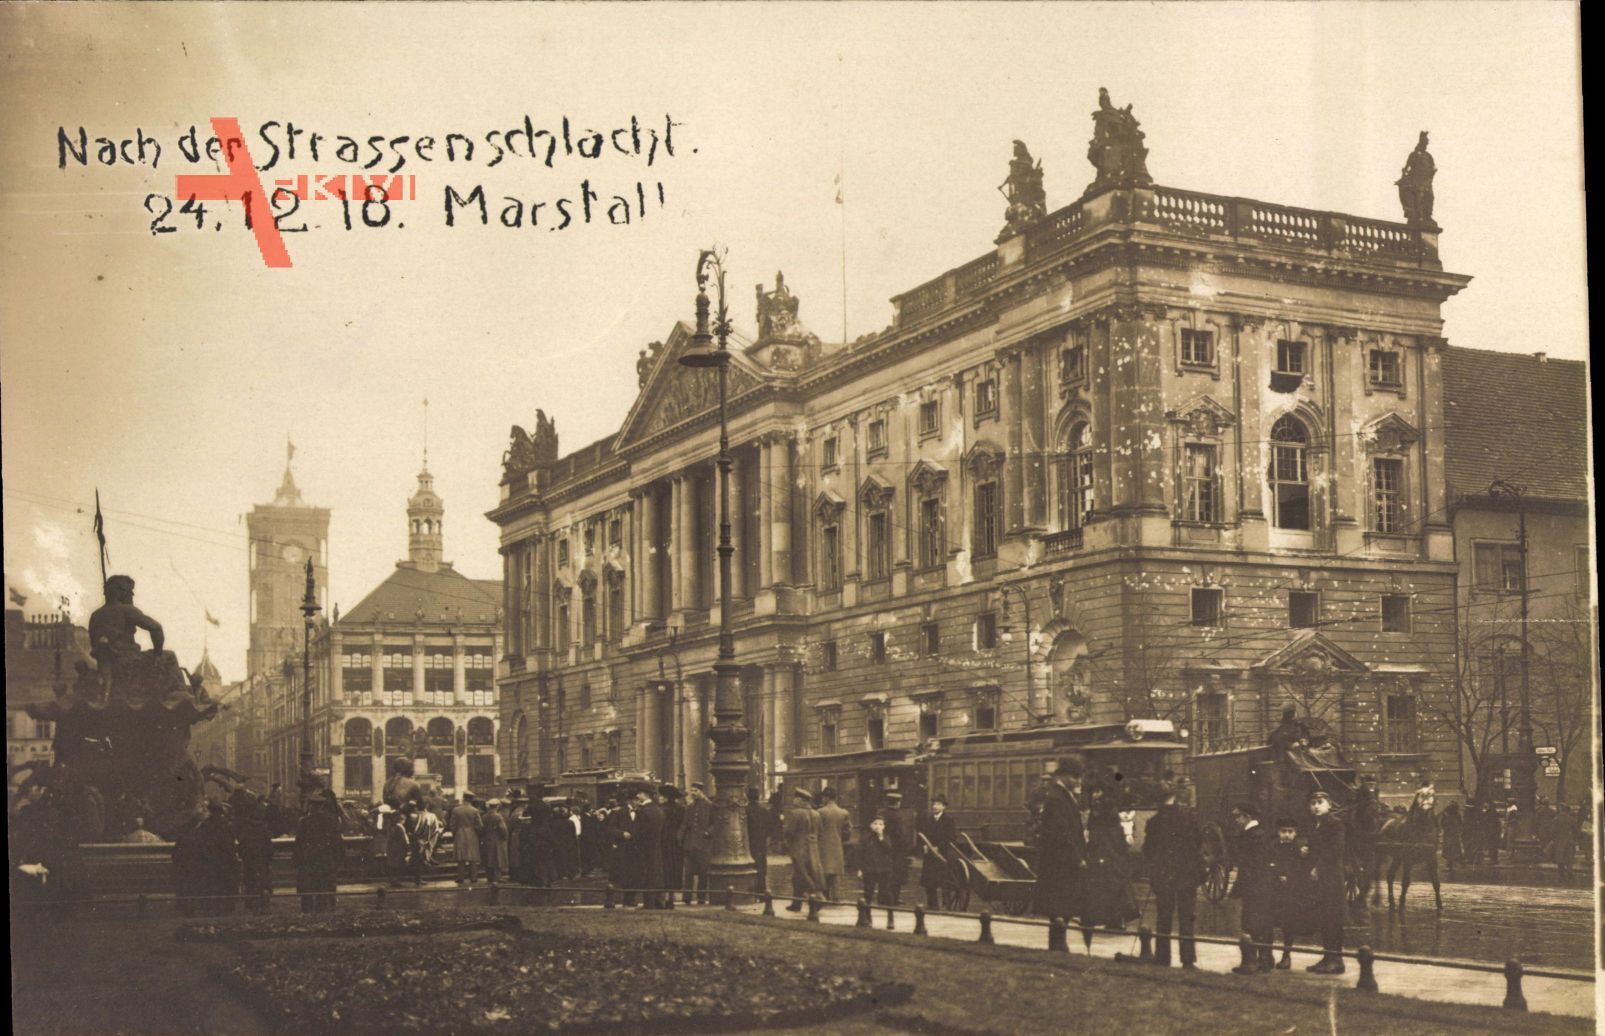 Berlin Mitte, Weihnachtskämpfe, Marstall, Straßenschlacht 24.12.1918